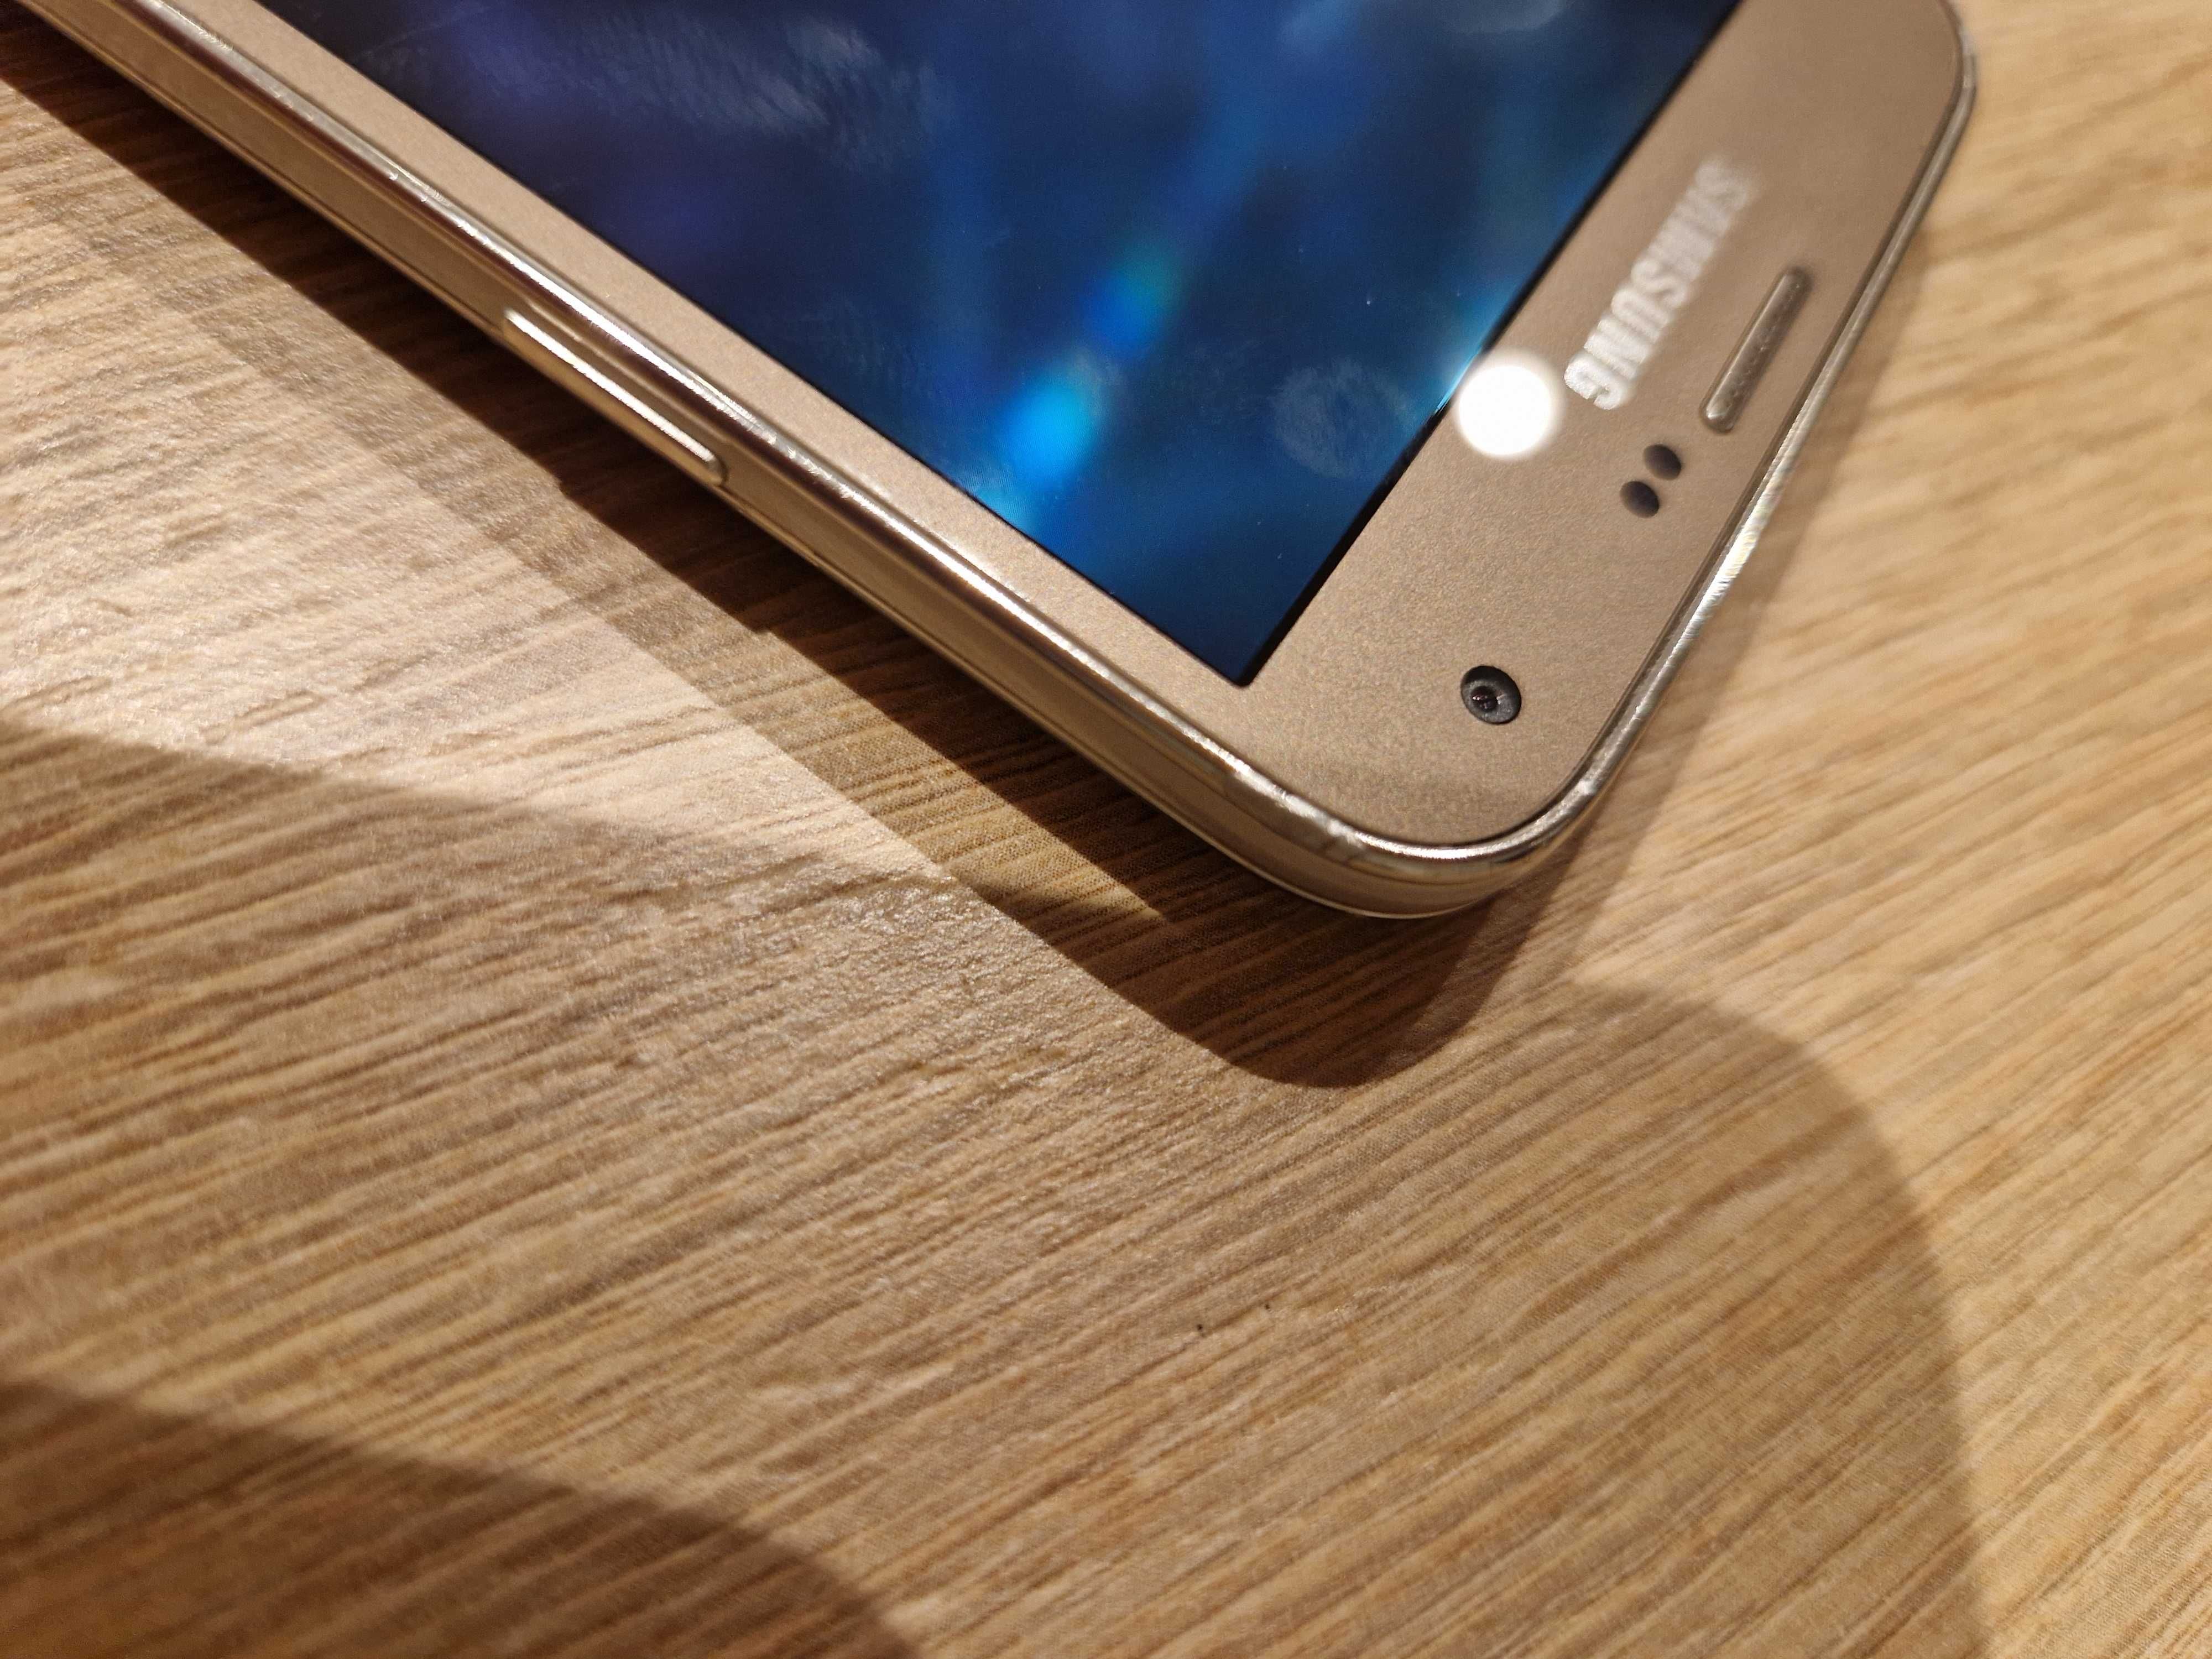 Samsung S5 Neo 16GB Złoty